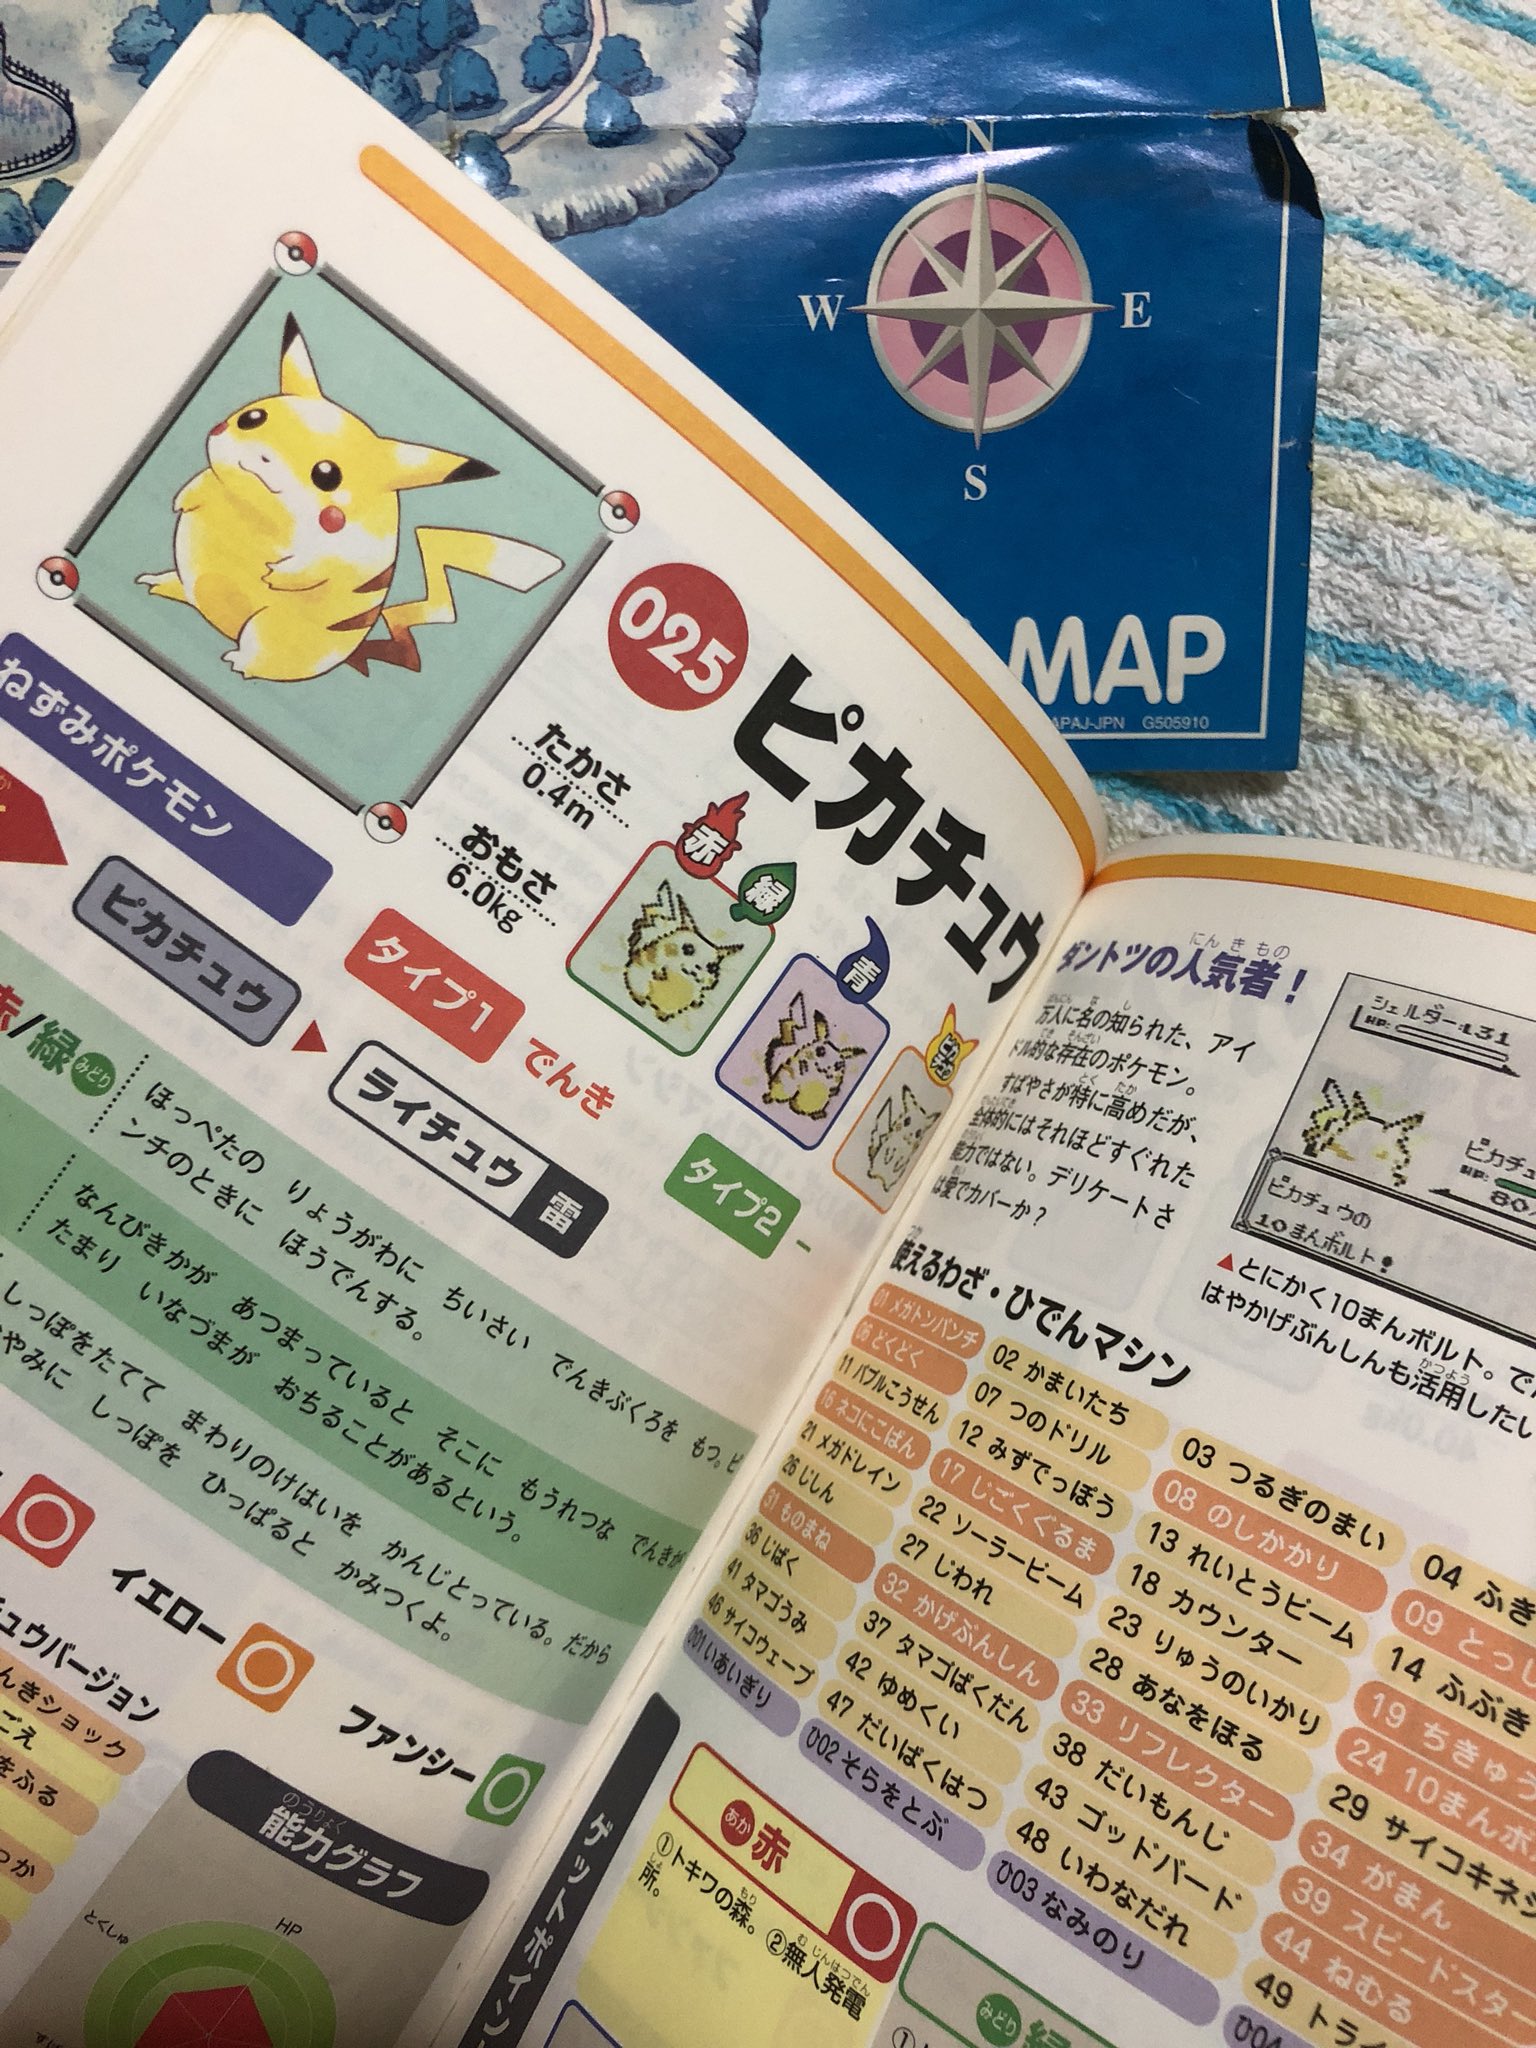 Twitter 上的 増田順一 Pokemon Kodamaro6 Poke Times ありがとうございます 攻略本 懐かしいですね ピカチュウも大切にされて嬉しそう Twitter